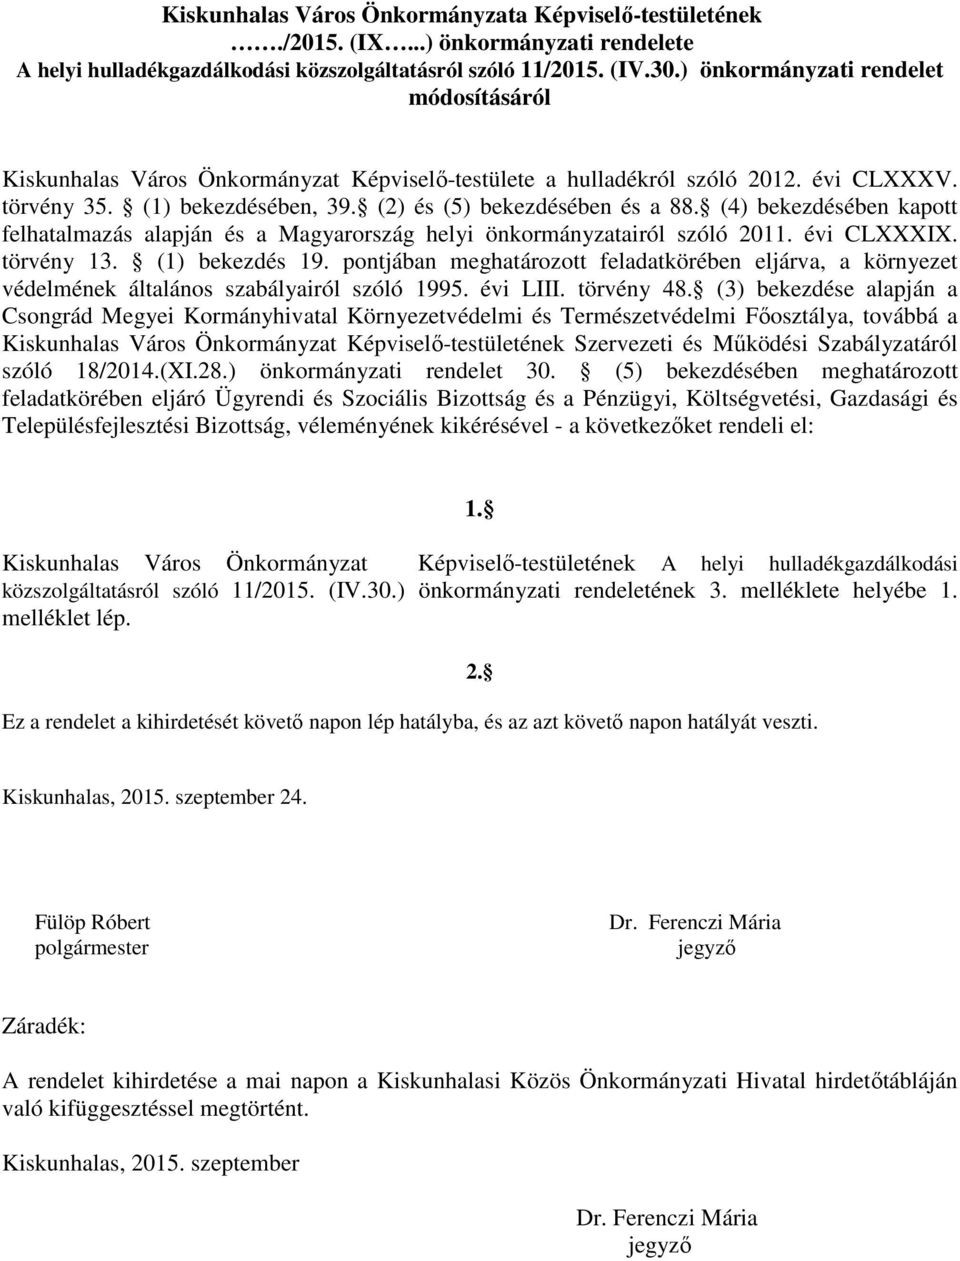 (4) bekezdésében kapott felhatalmazás alapján és a Magyarország helyi önkormányzatairól szóló 2011. évi CLXXXIX. törvény 13. (1) bekezdés 19.